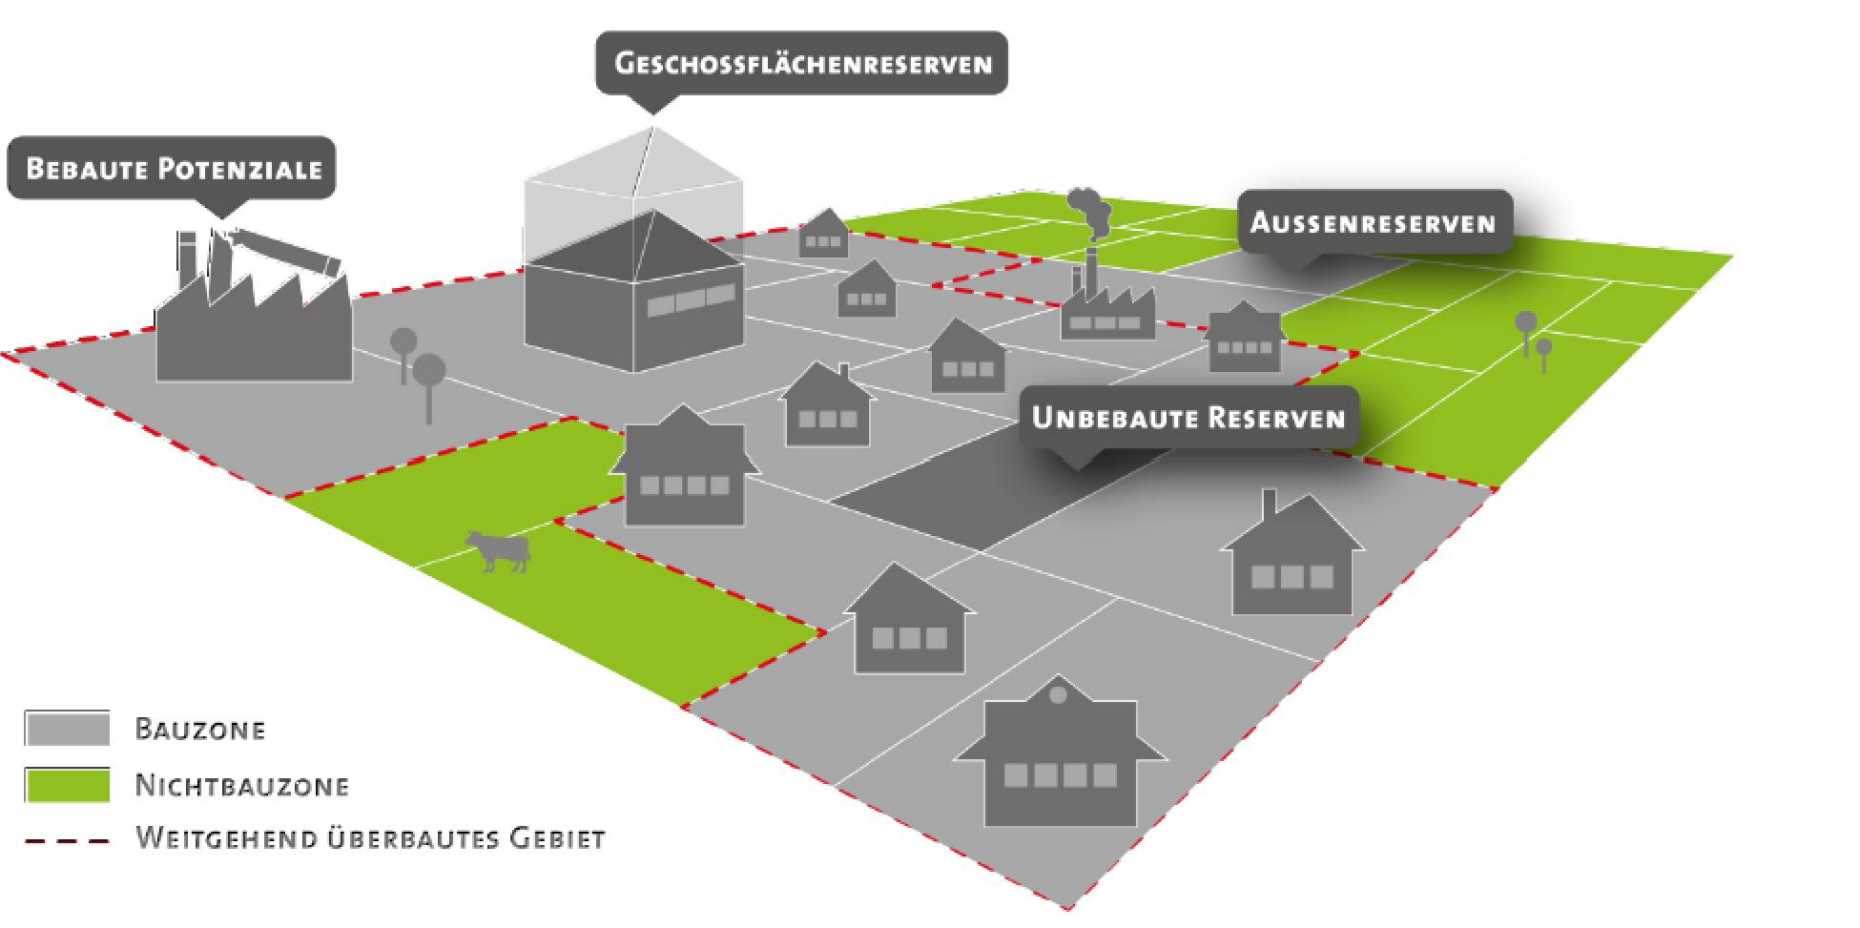 Enlarged view: Kategorien der Innenentwicklung und der Flächenreserven